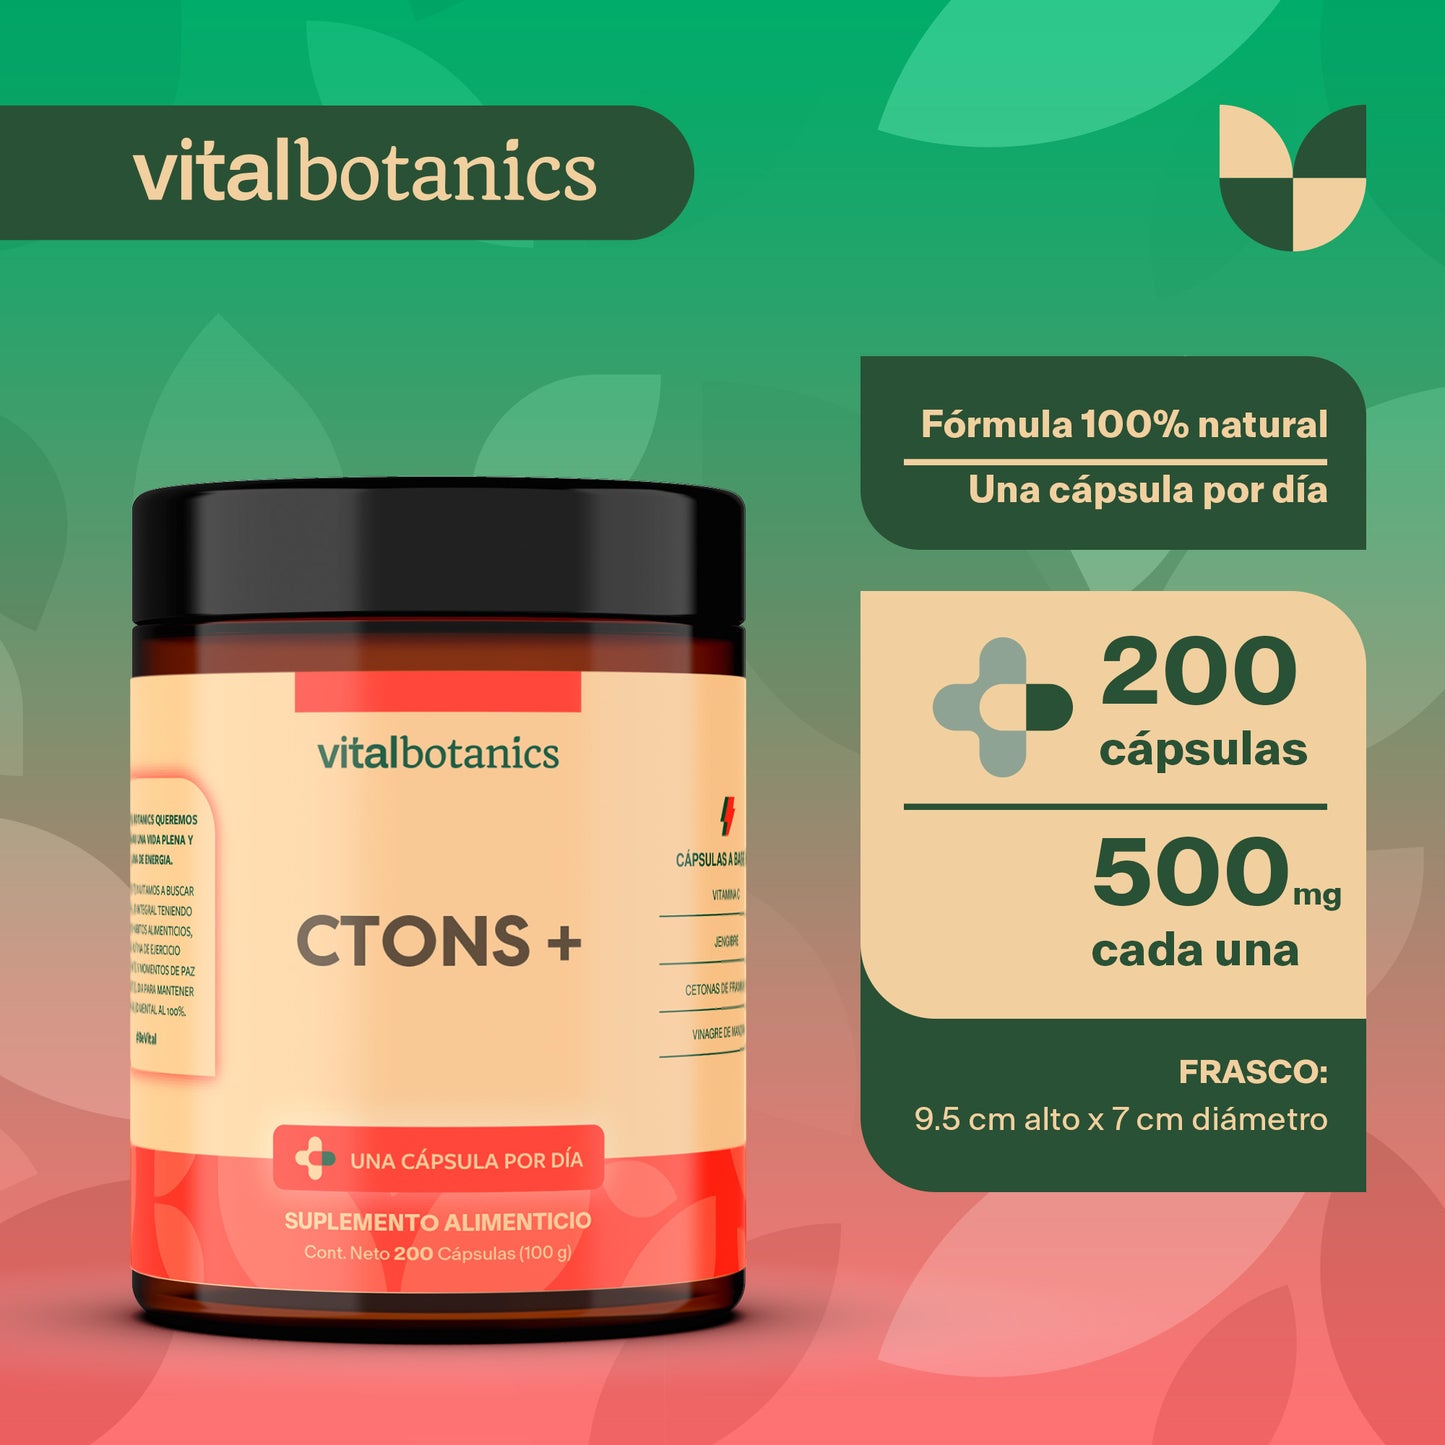 CTONS+ | Vitamina C, Jengibre, Cetonas y Vinagre de Manzana